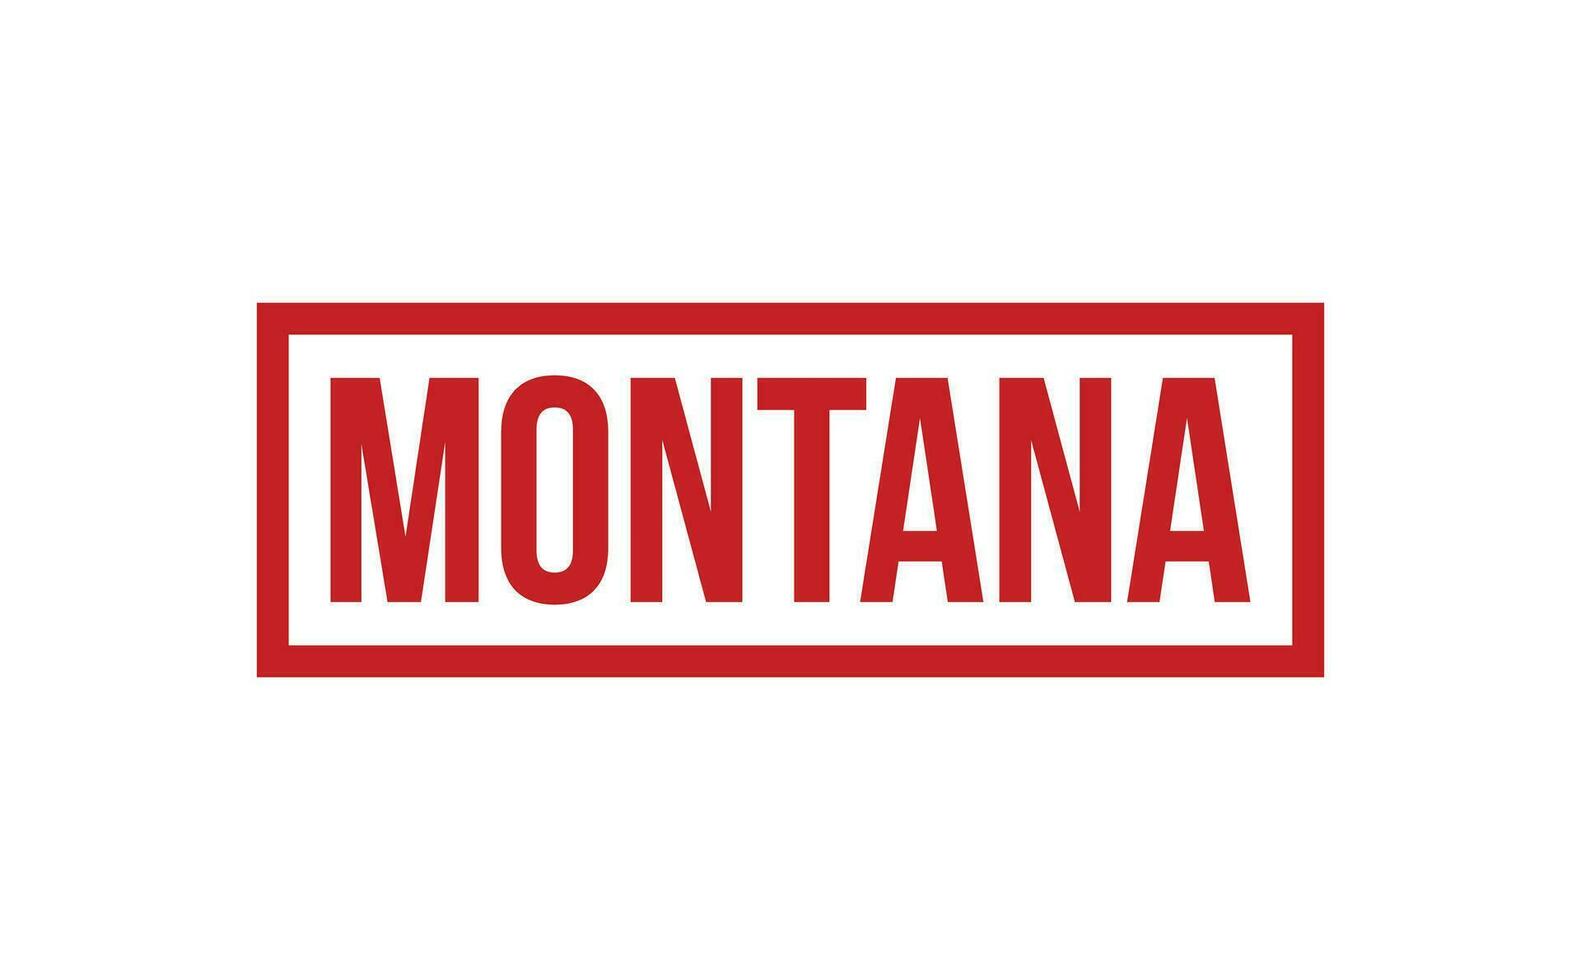 Montana Gummi Briefmarke Siegel Vektor